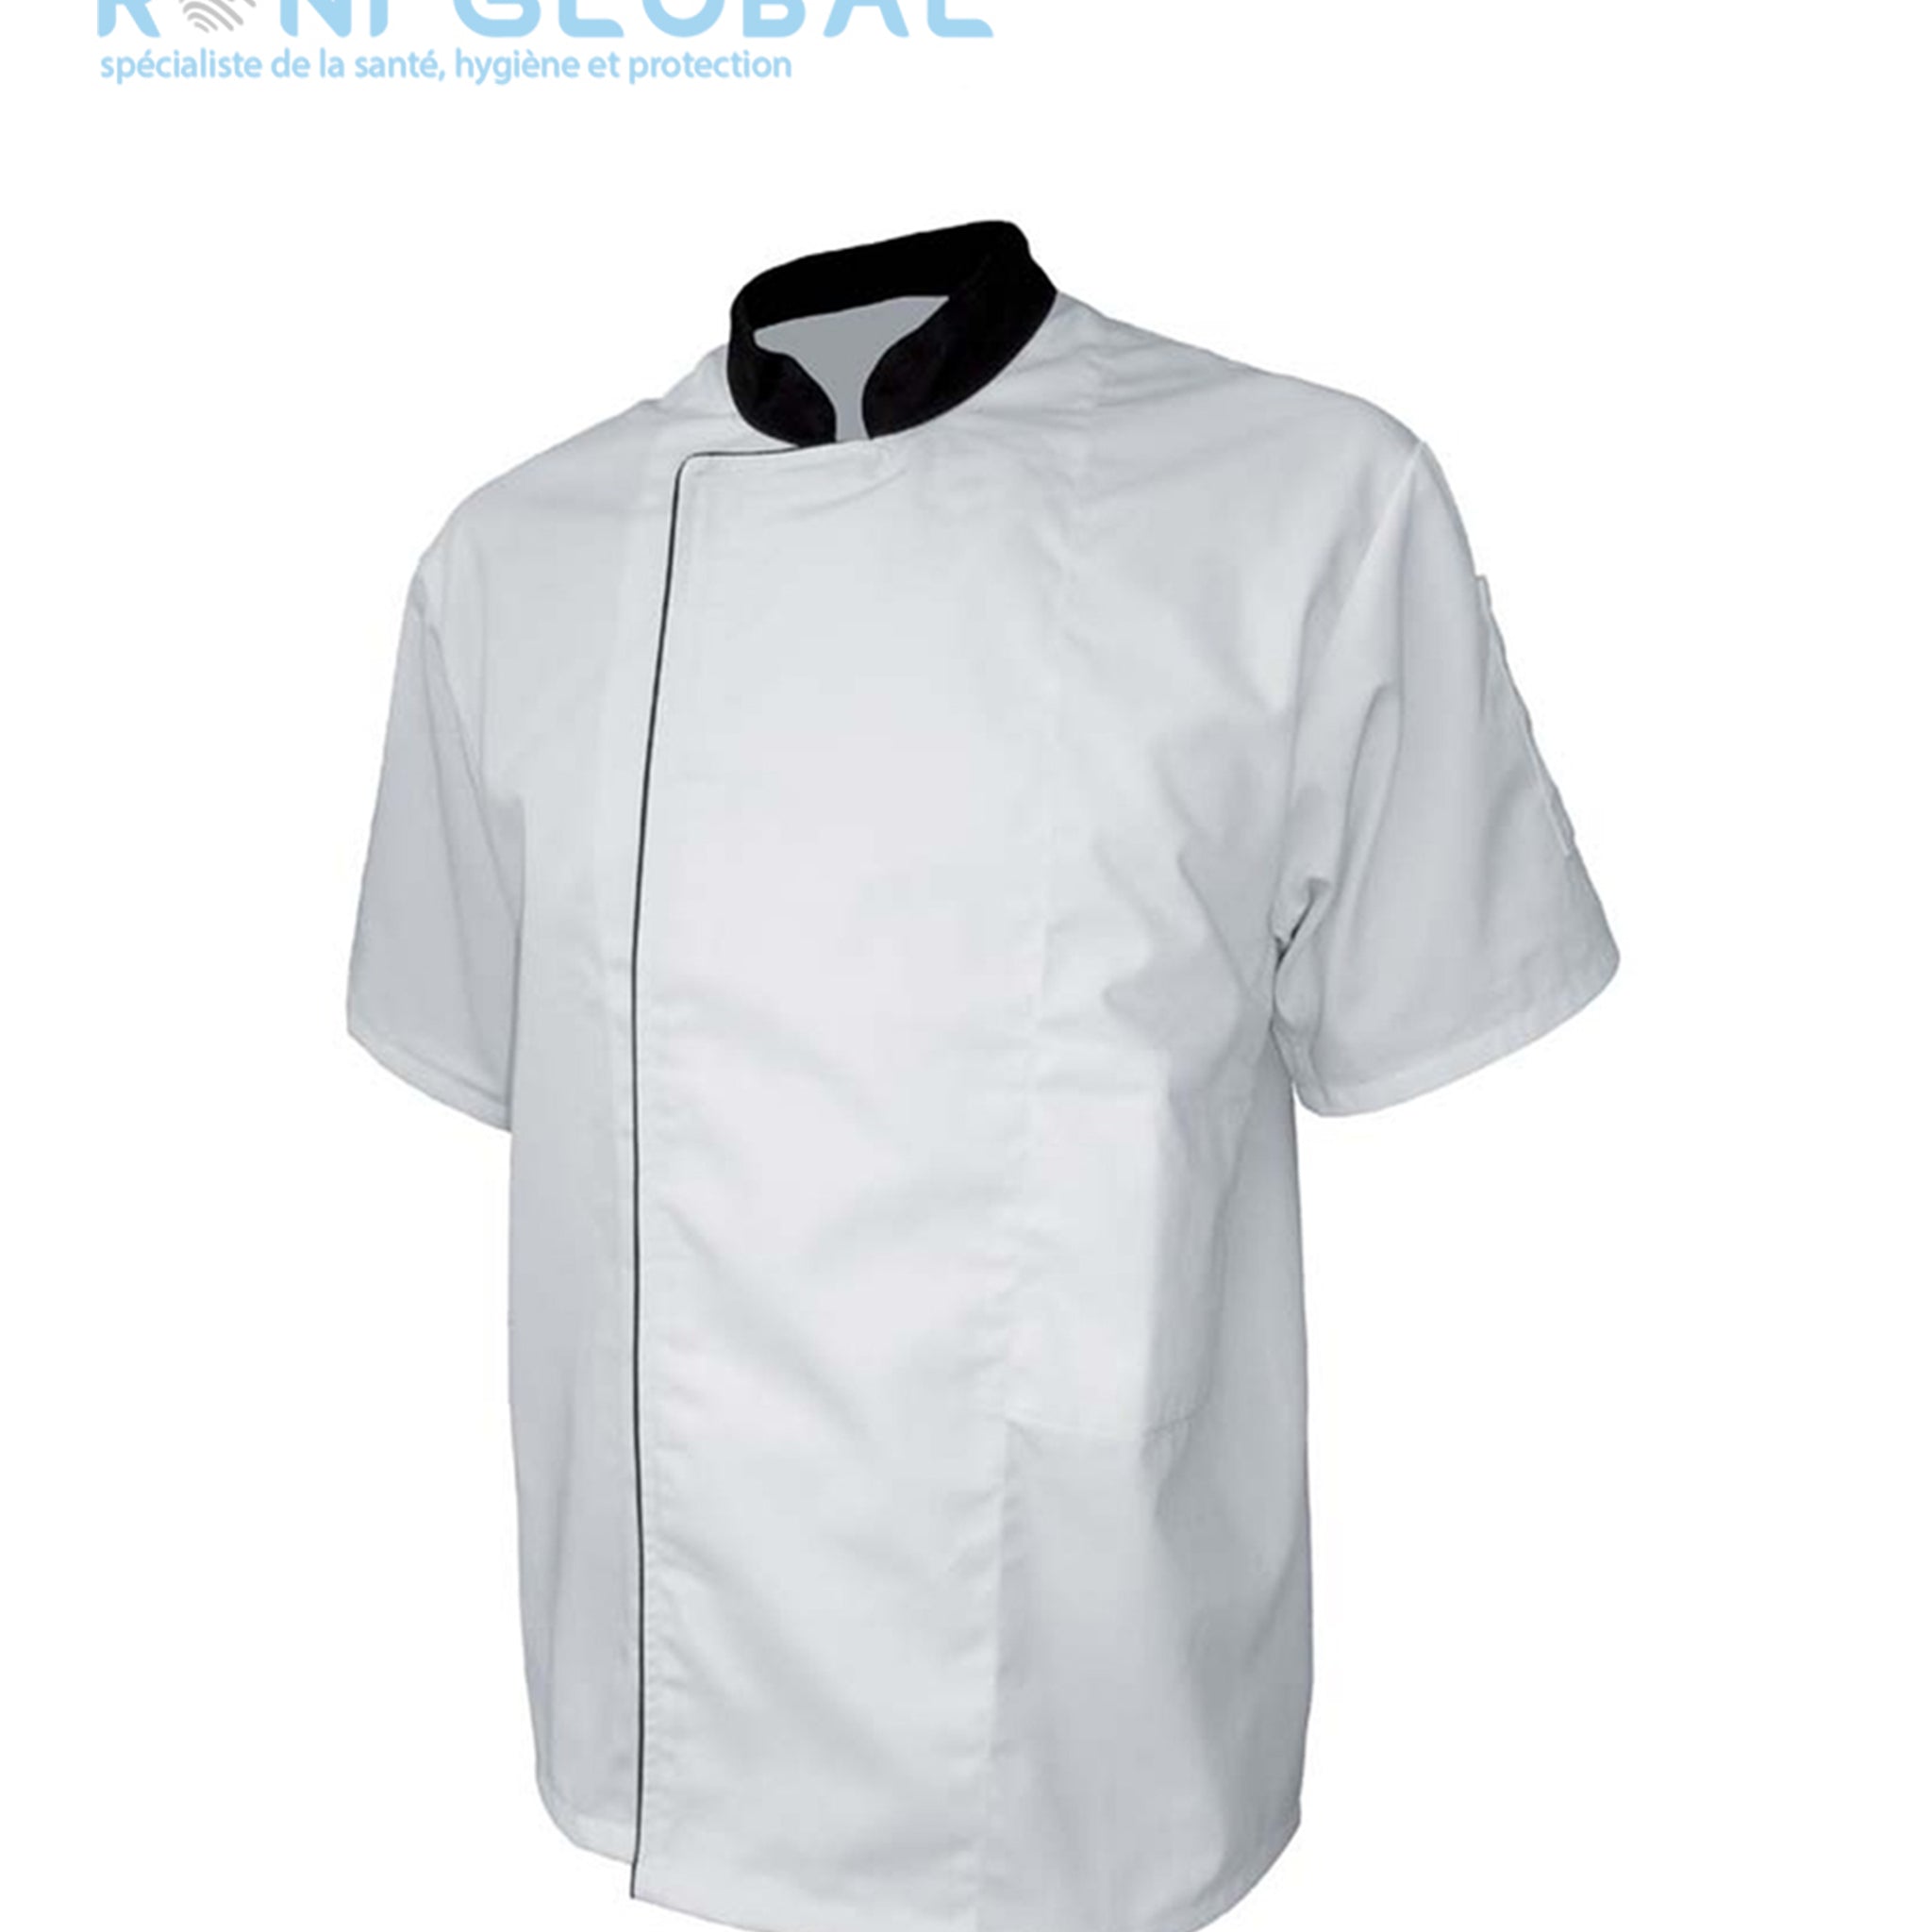 Veste de cuisine blanche manches courtes, en coton/polyester 2 poches - VESTE CUISINE MC P/C BLANC/NOIR PBV